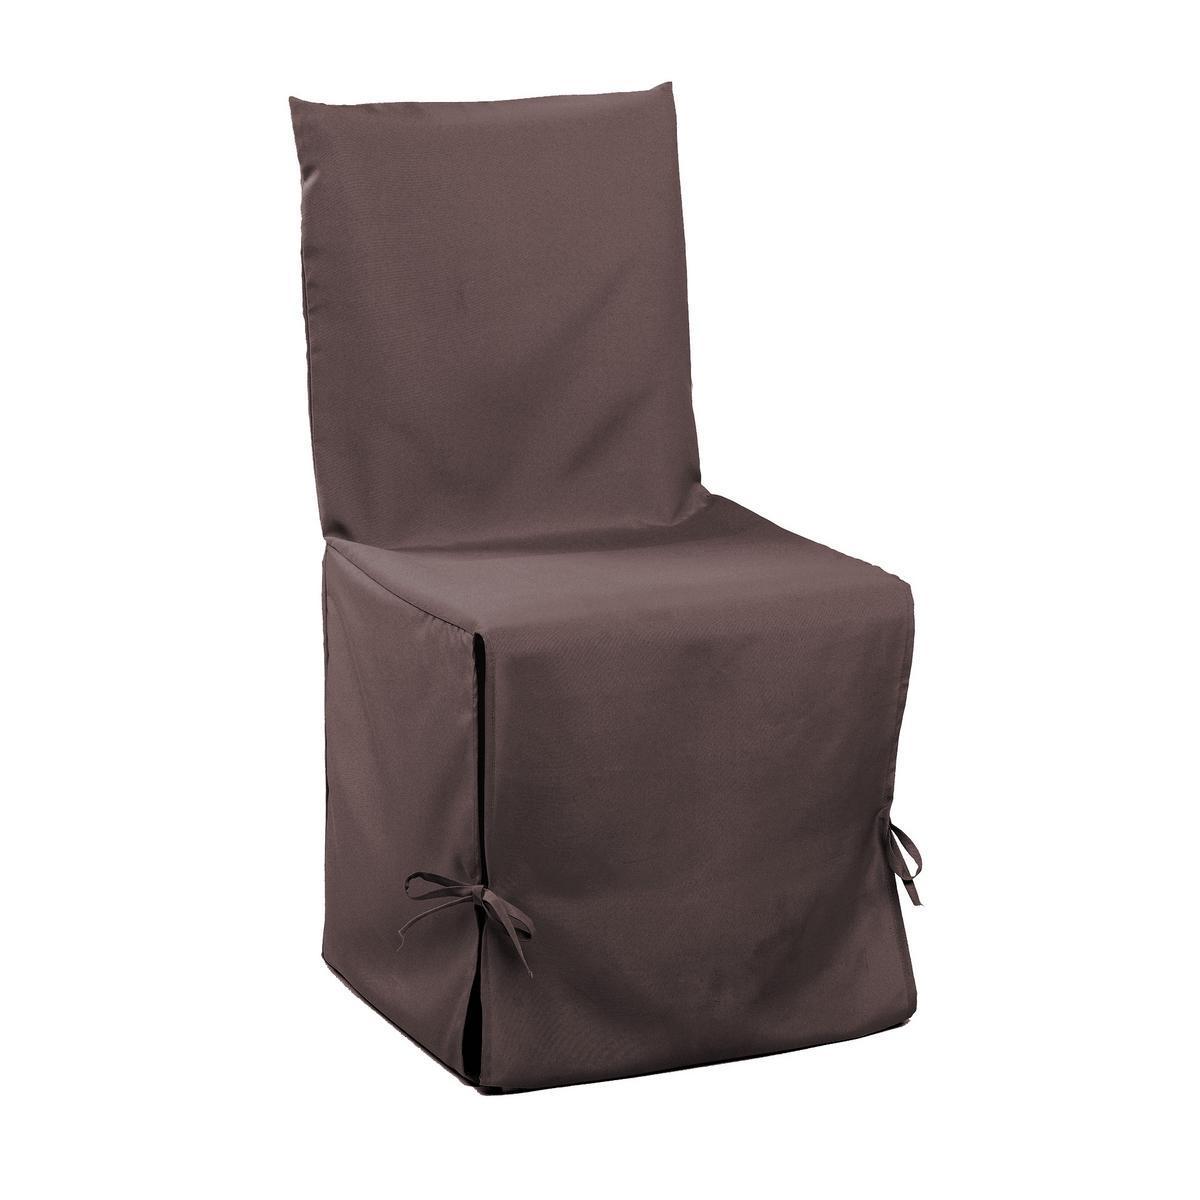 Housse de chaise - 50 x 50 x H 50 cm - Marron